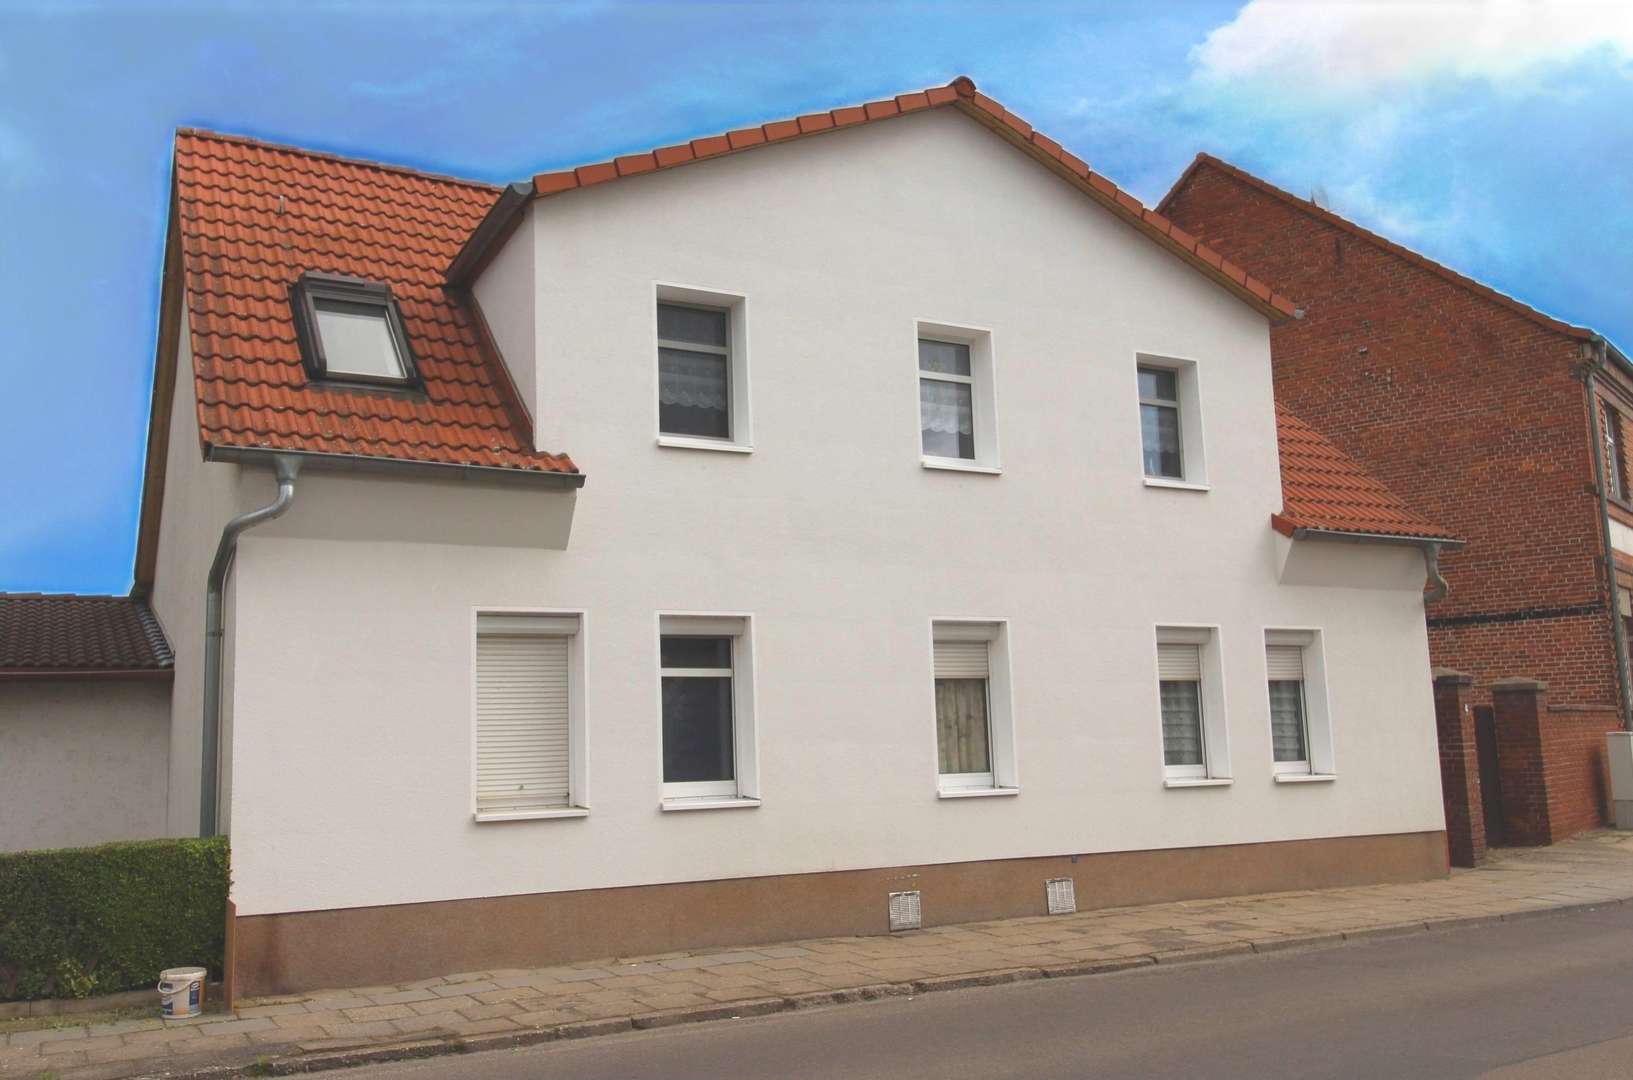 Vorderansicht - Mehrfamilienhaus in 06846 Dessau-Roßlau mit 143m² als Kapitalanlage kaufen